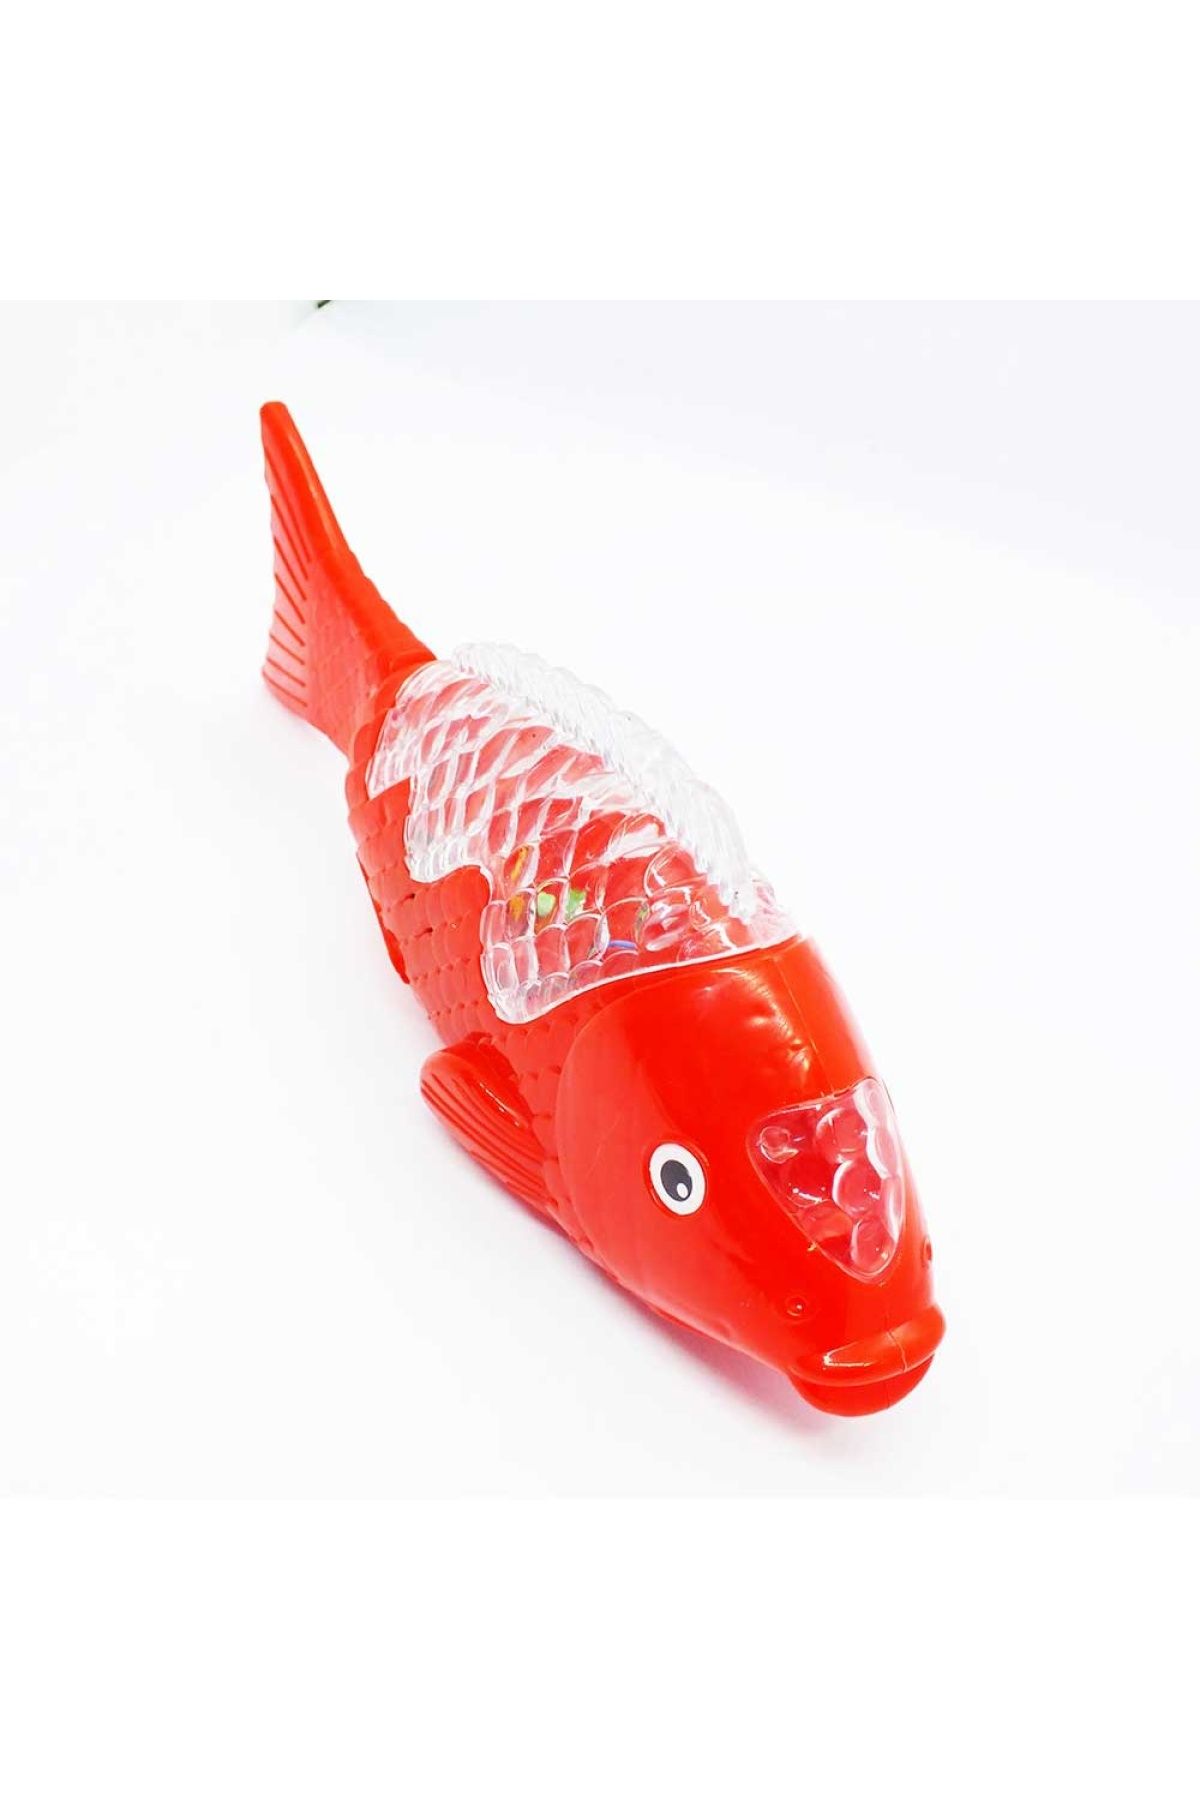 AKKA TOKA Sesli Işıklı Yürüyen Hareketli Oyuncak Balık Kırmızı